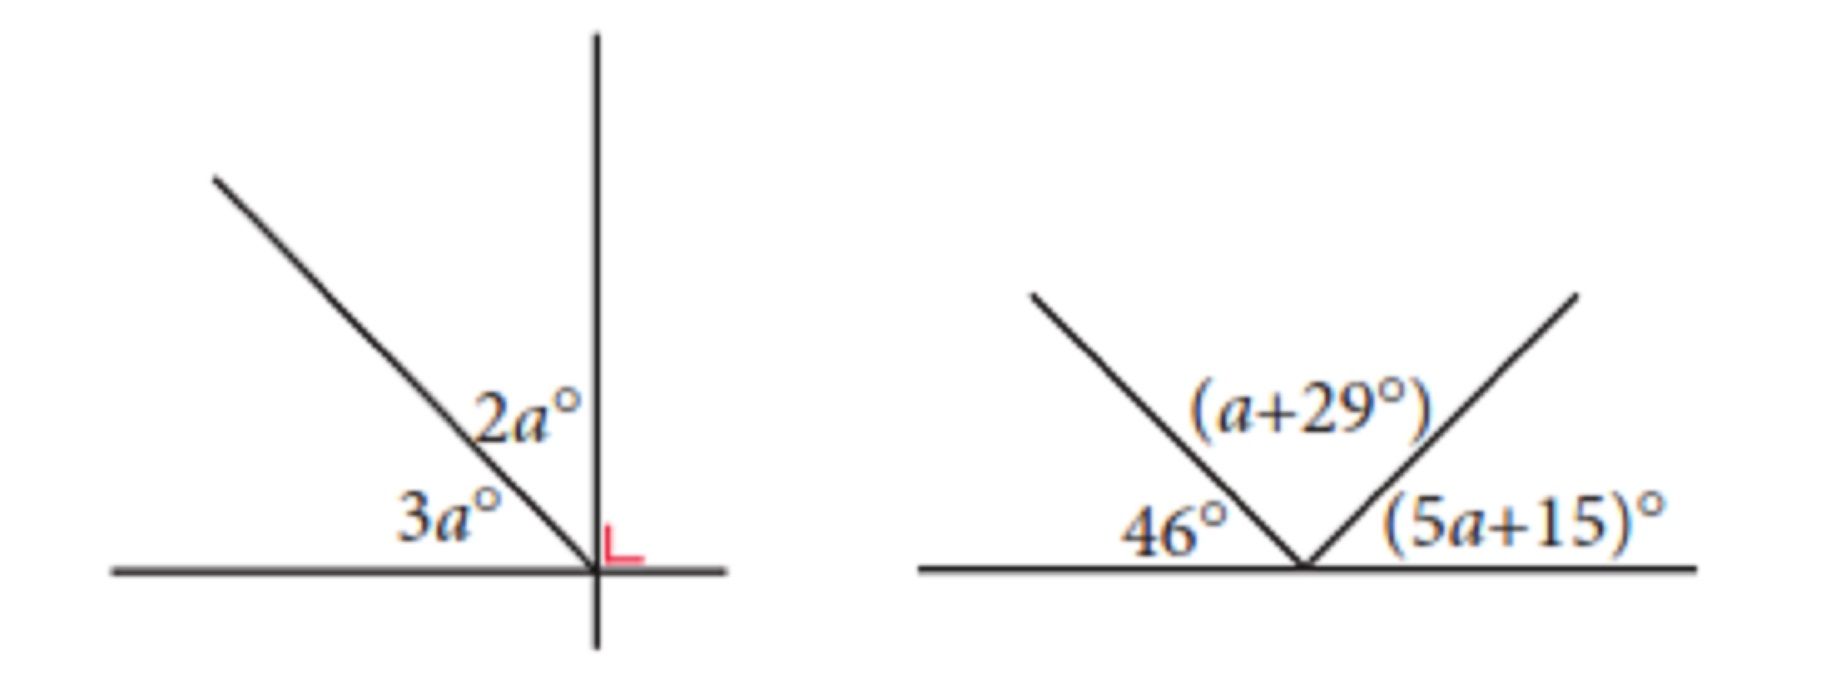 Soal matematika kelas 7 SMP/MTs Semester 2 tentang hubungan antar sudut